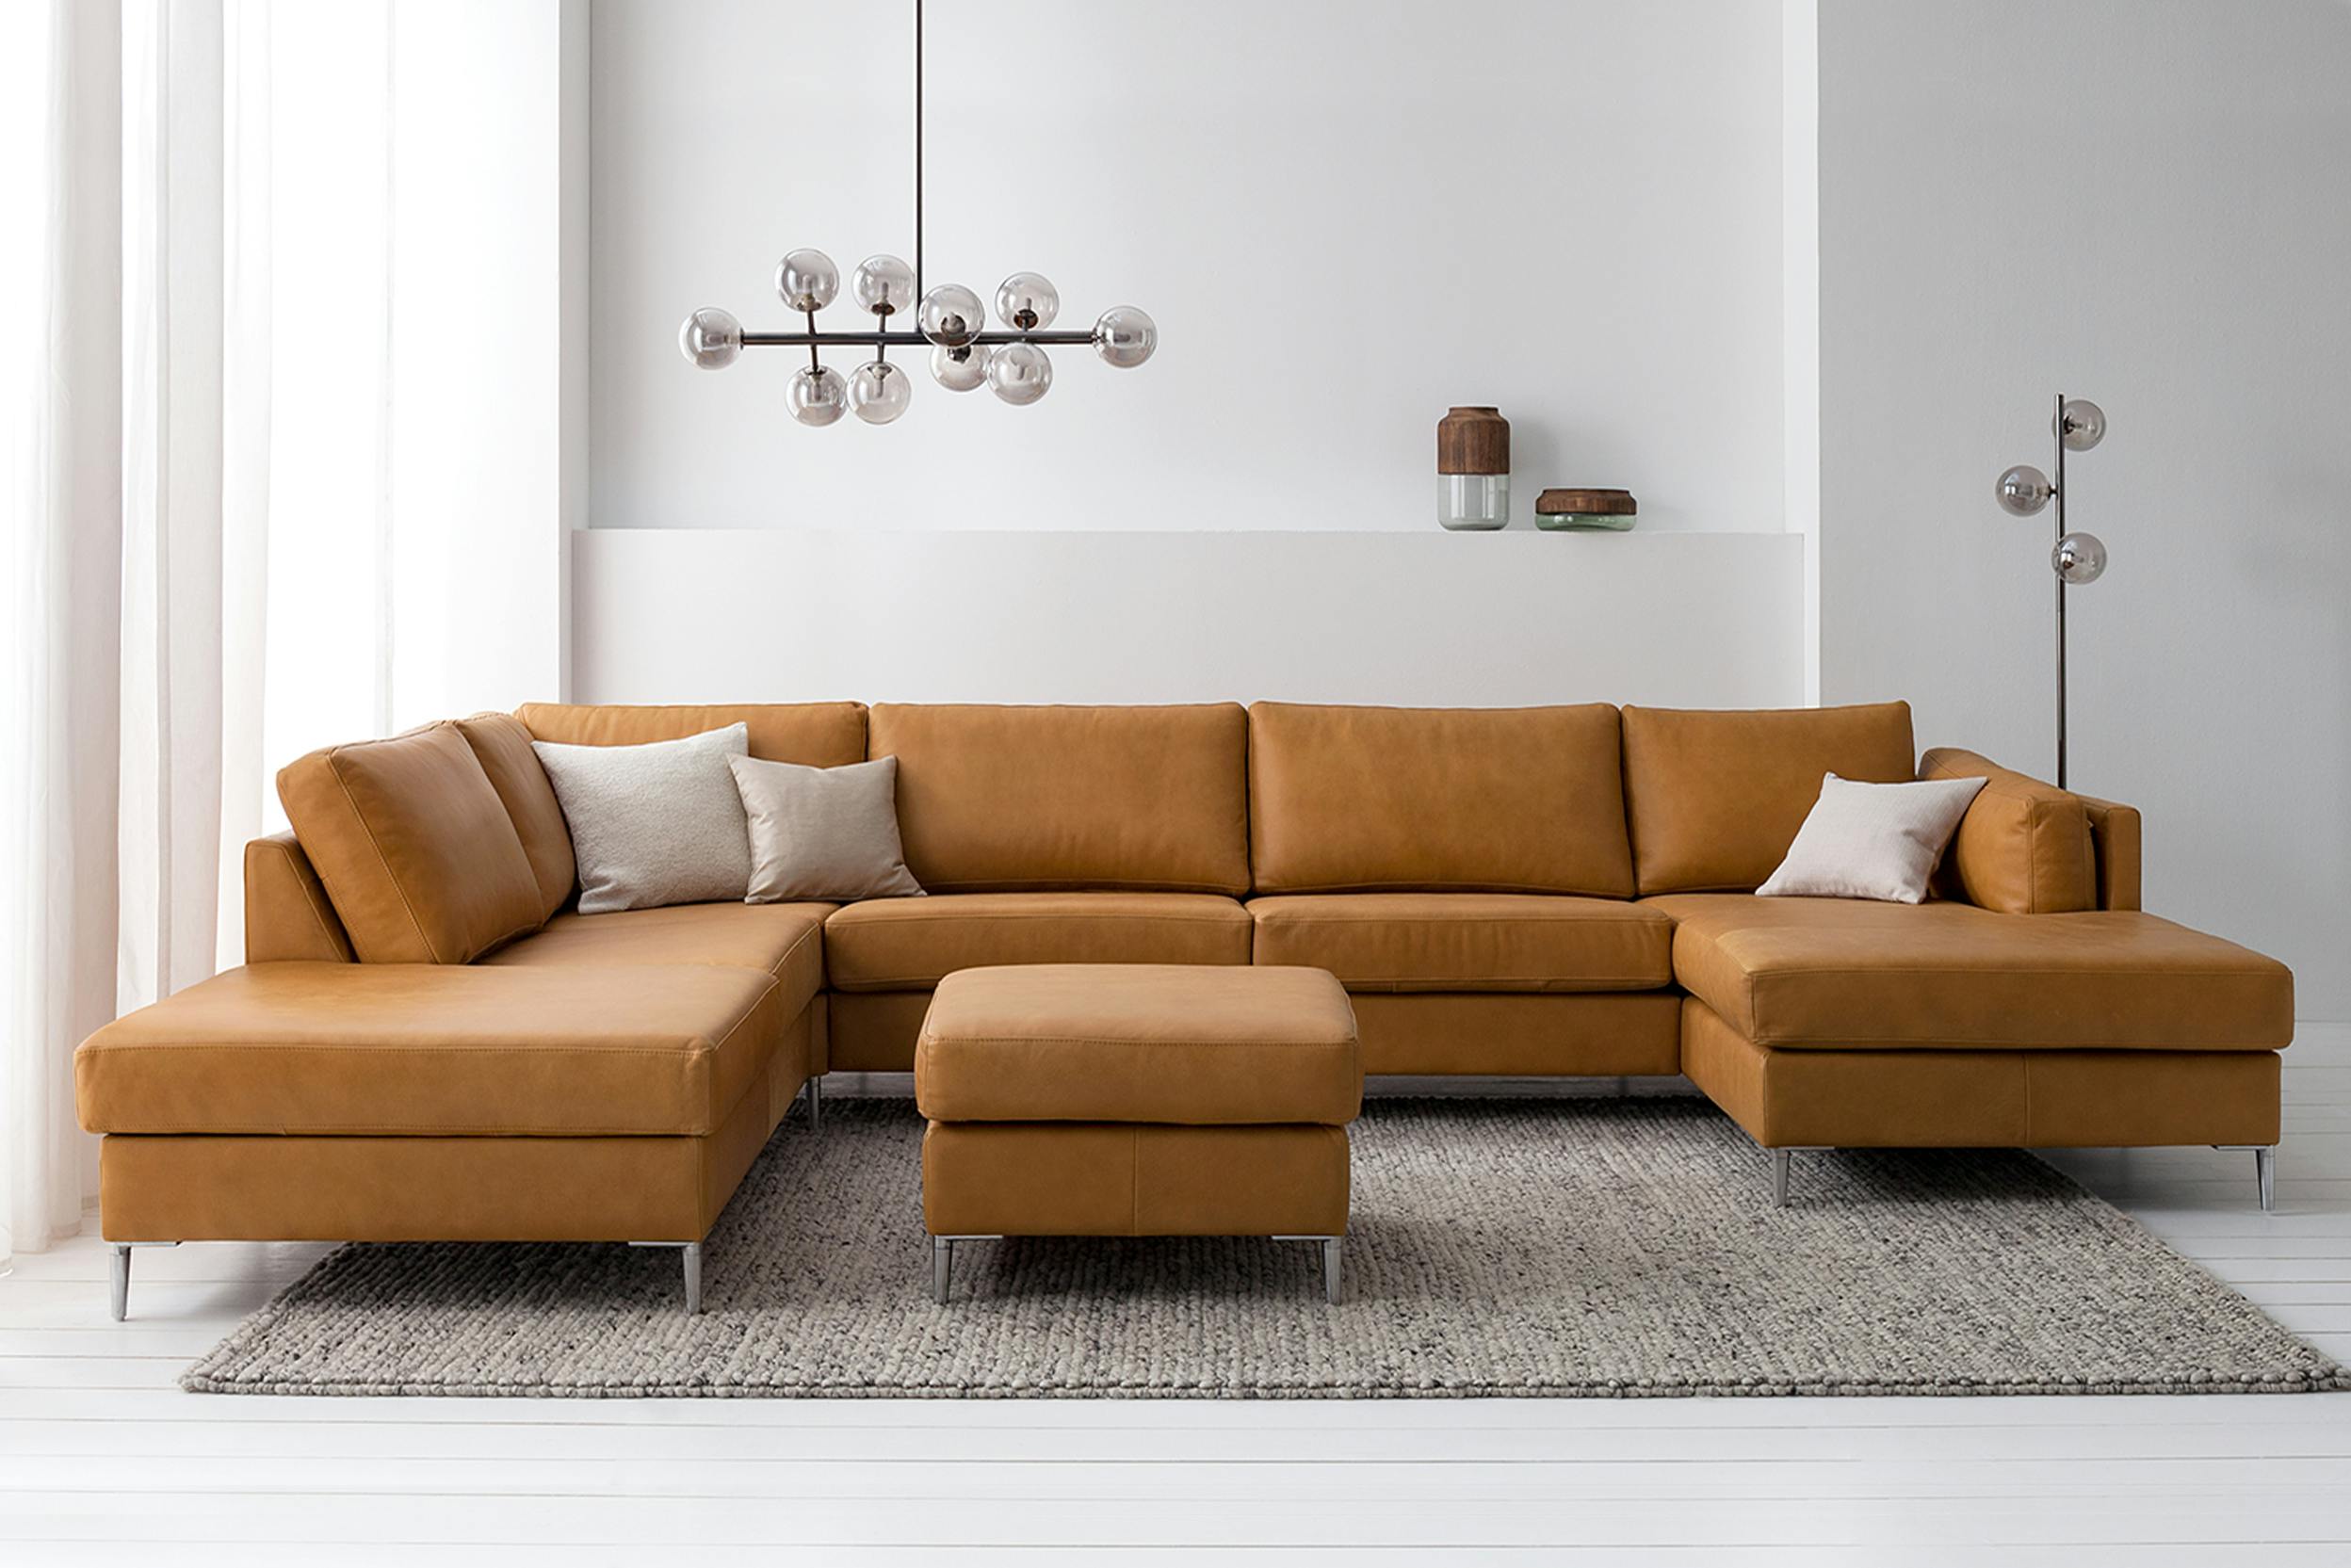 Hellbraunes Sofa in Wohnzimmer mit modernen Leuchten und großem Teppich